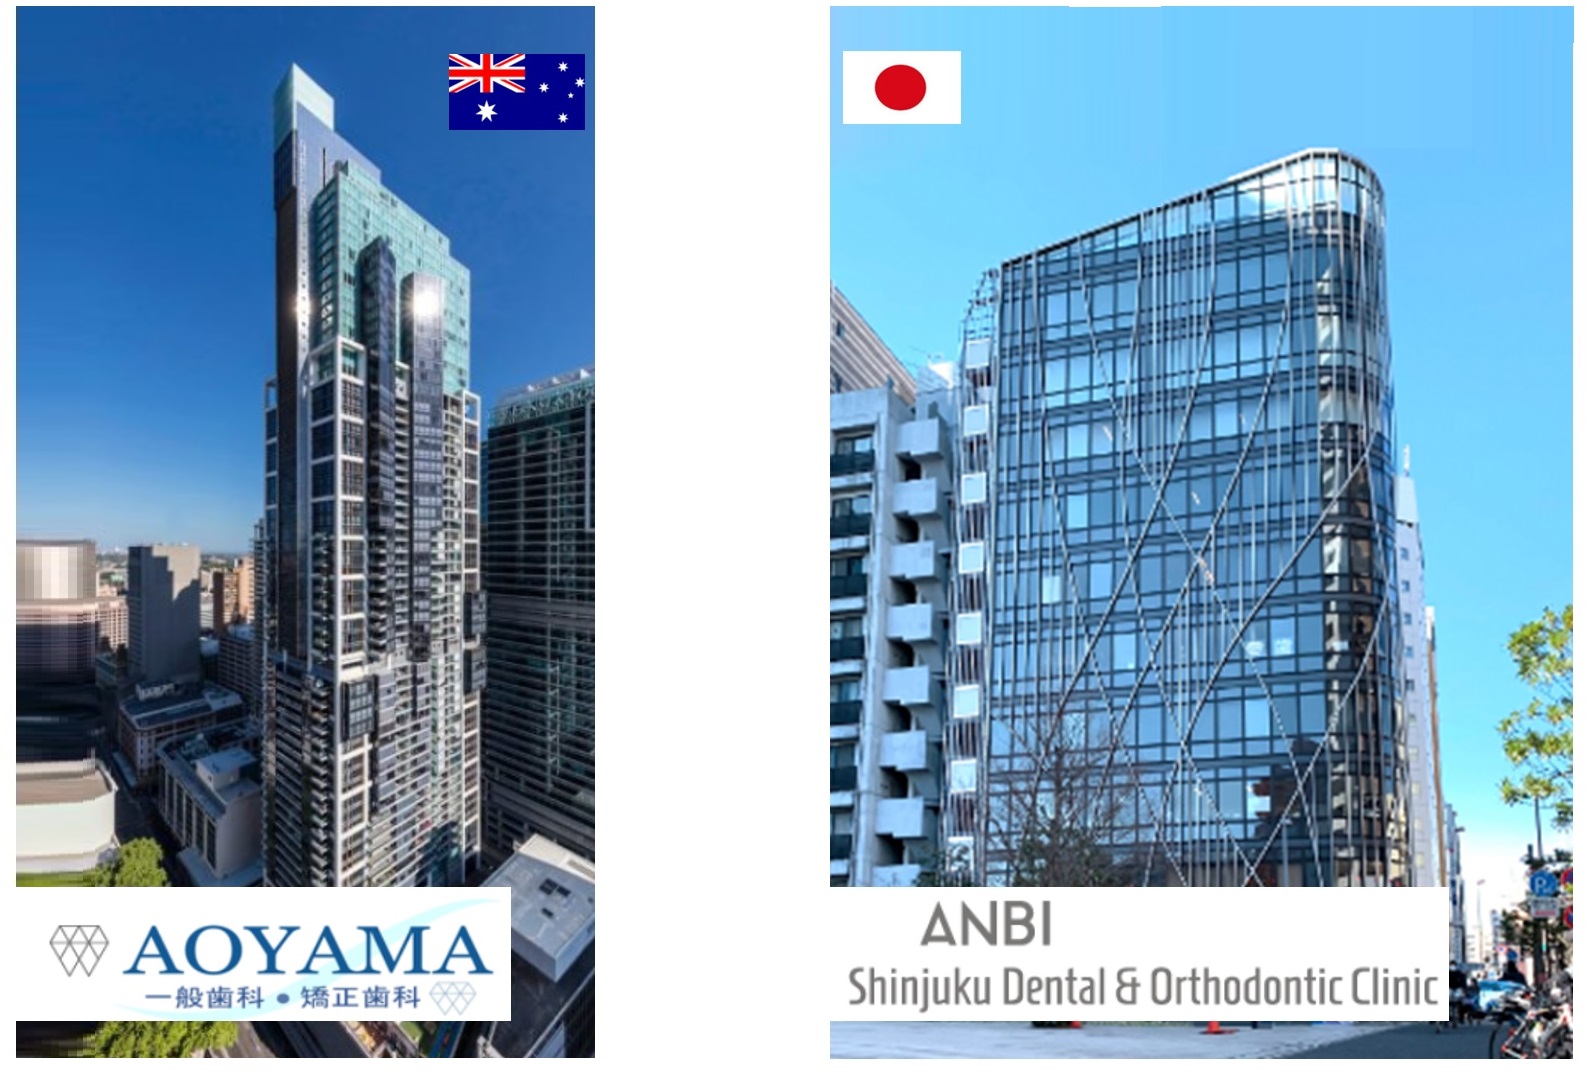 当院の日本の姉妹クリニック ANBI新宿歯科・矯正歯科 | JAMS.TV オーストラリア生活情報ウェブサイト